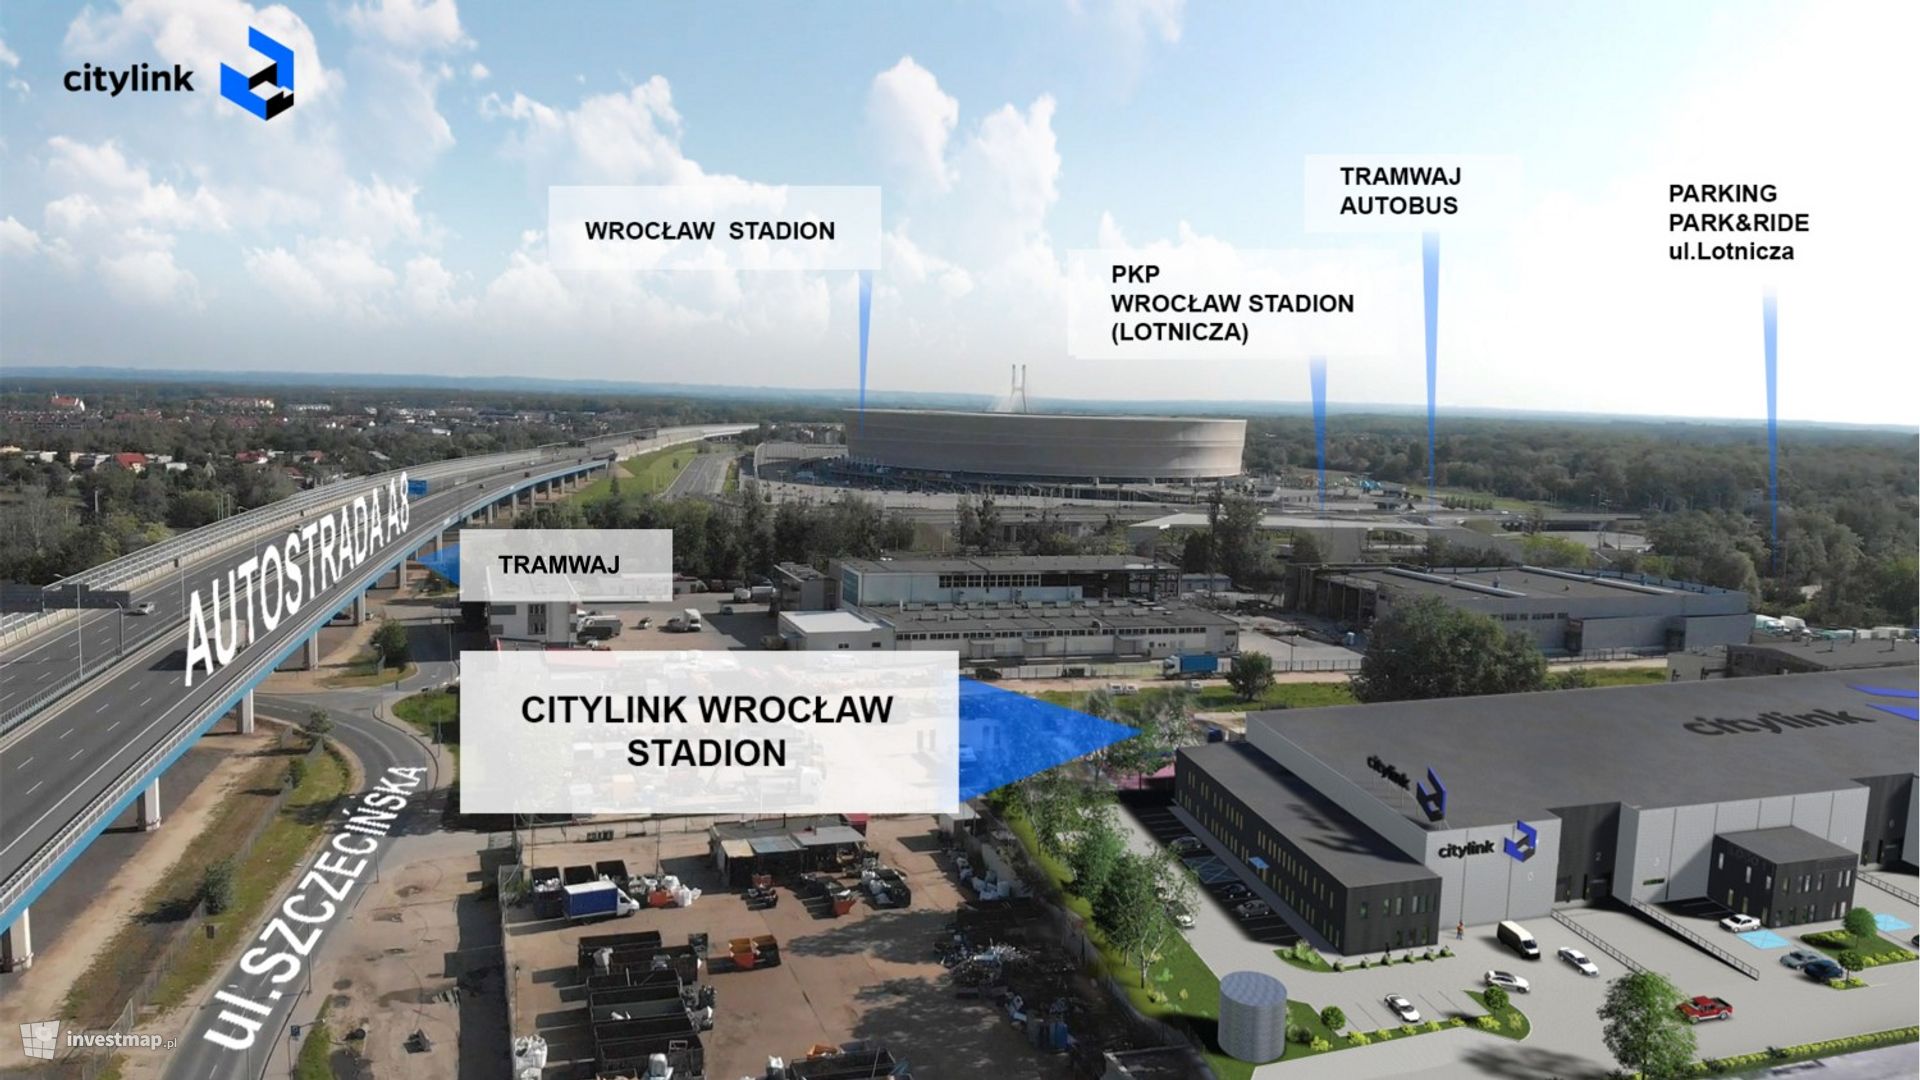 Citylink Wrocław Stadion